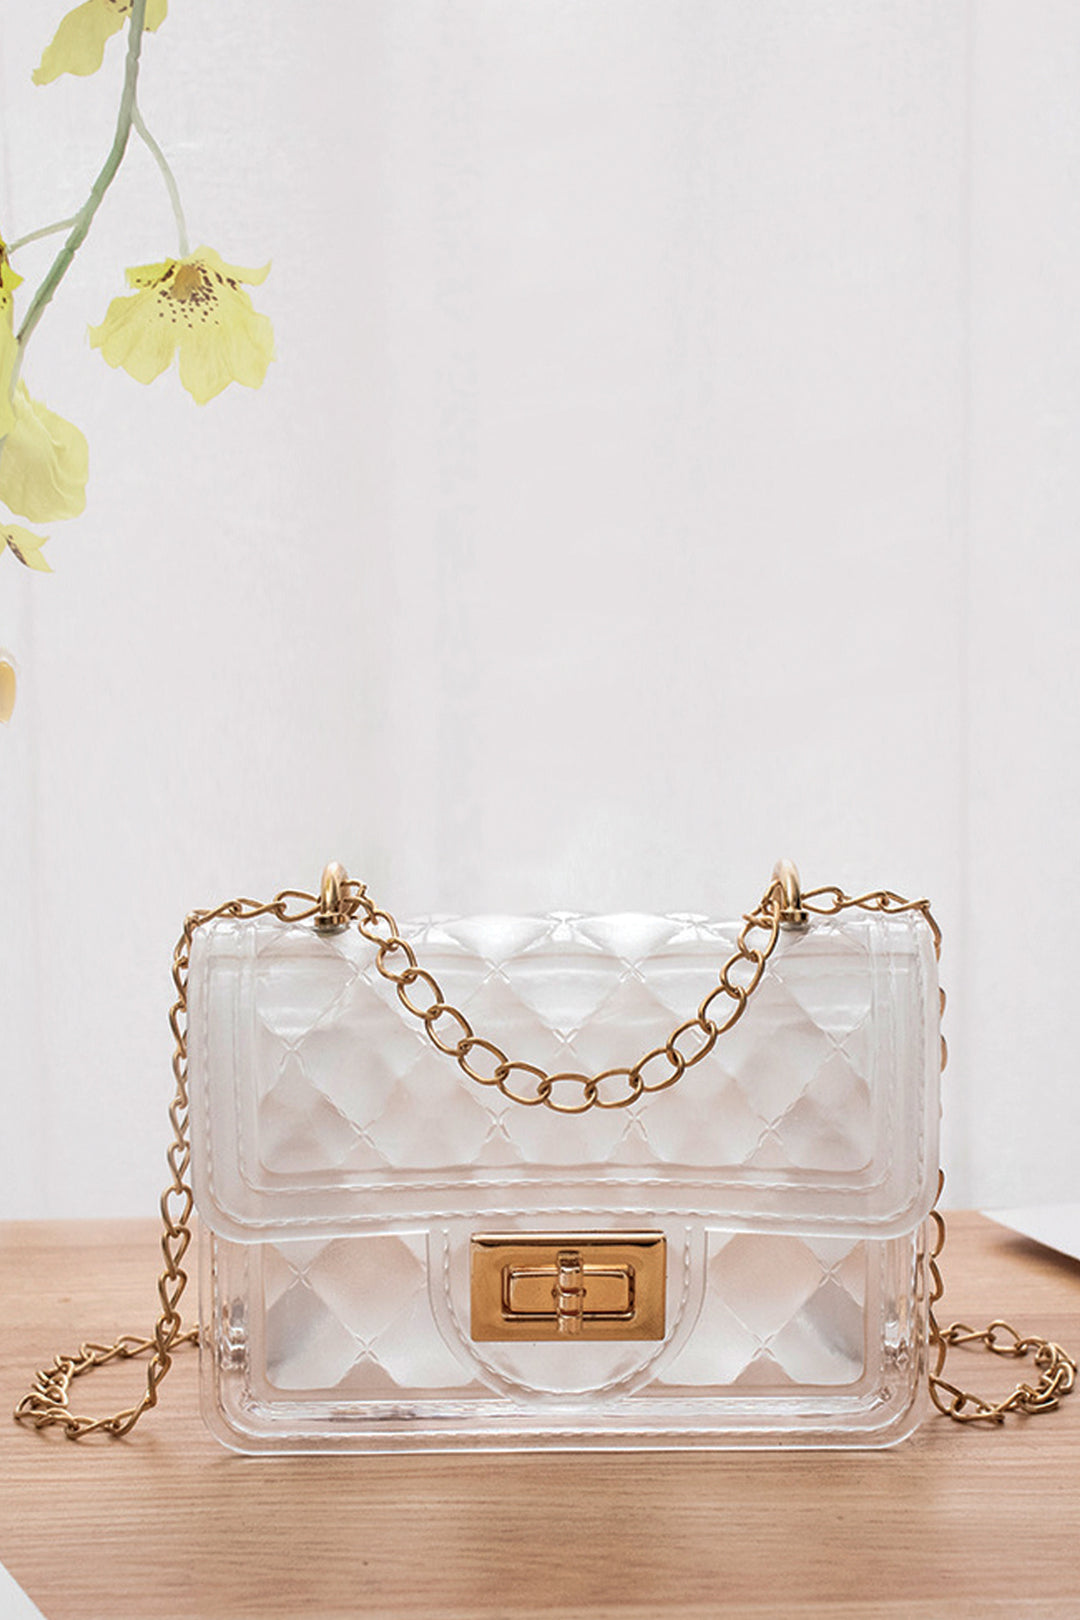 White Pearl Handbag - S22 - WHB0037